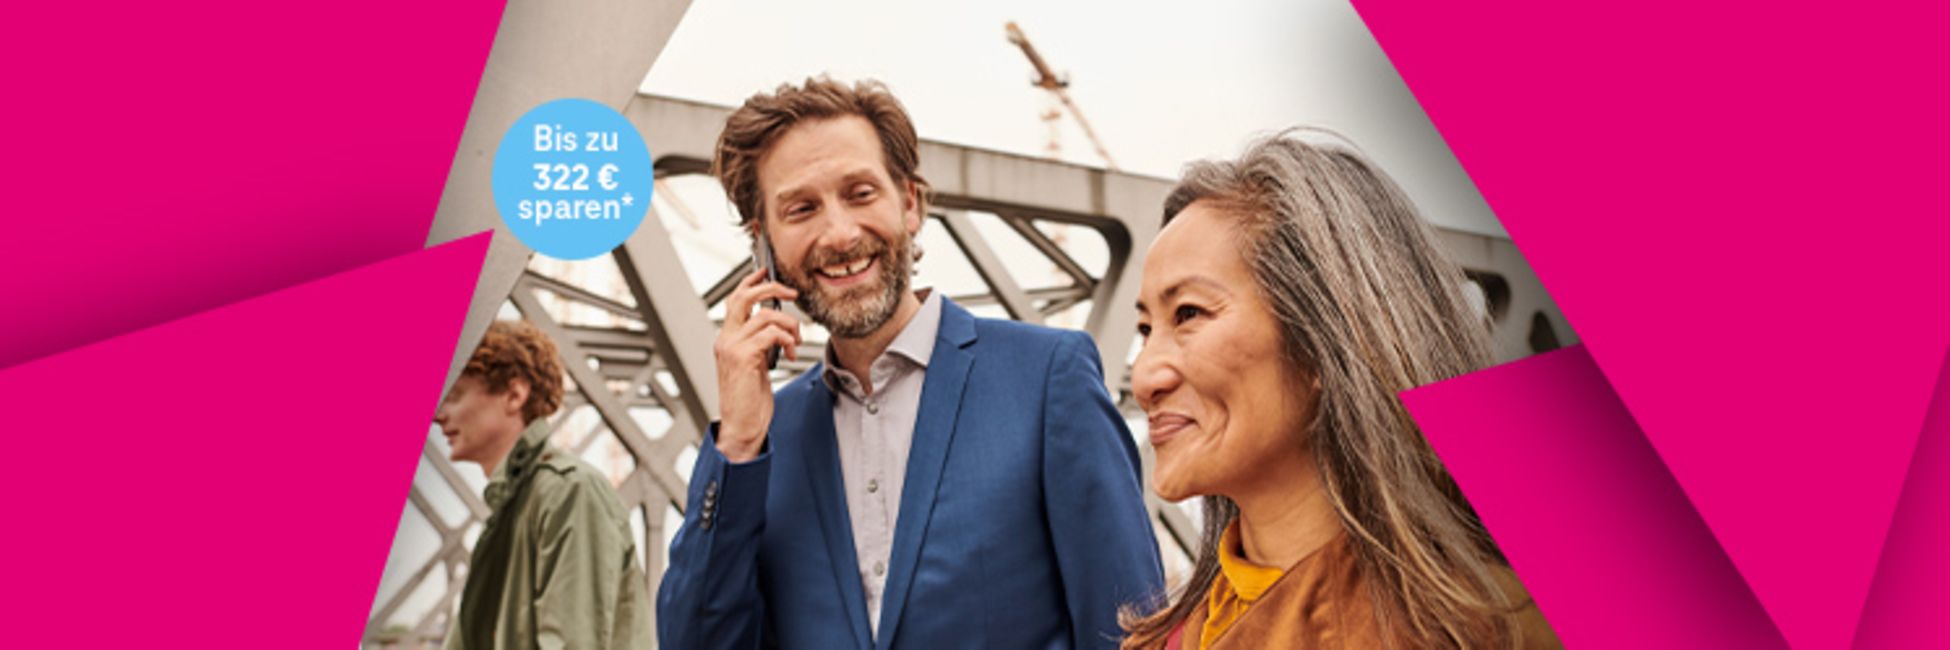 Lachender Mann links am Handy telefonierend und Frau rechts am lächeln